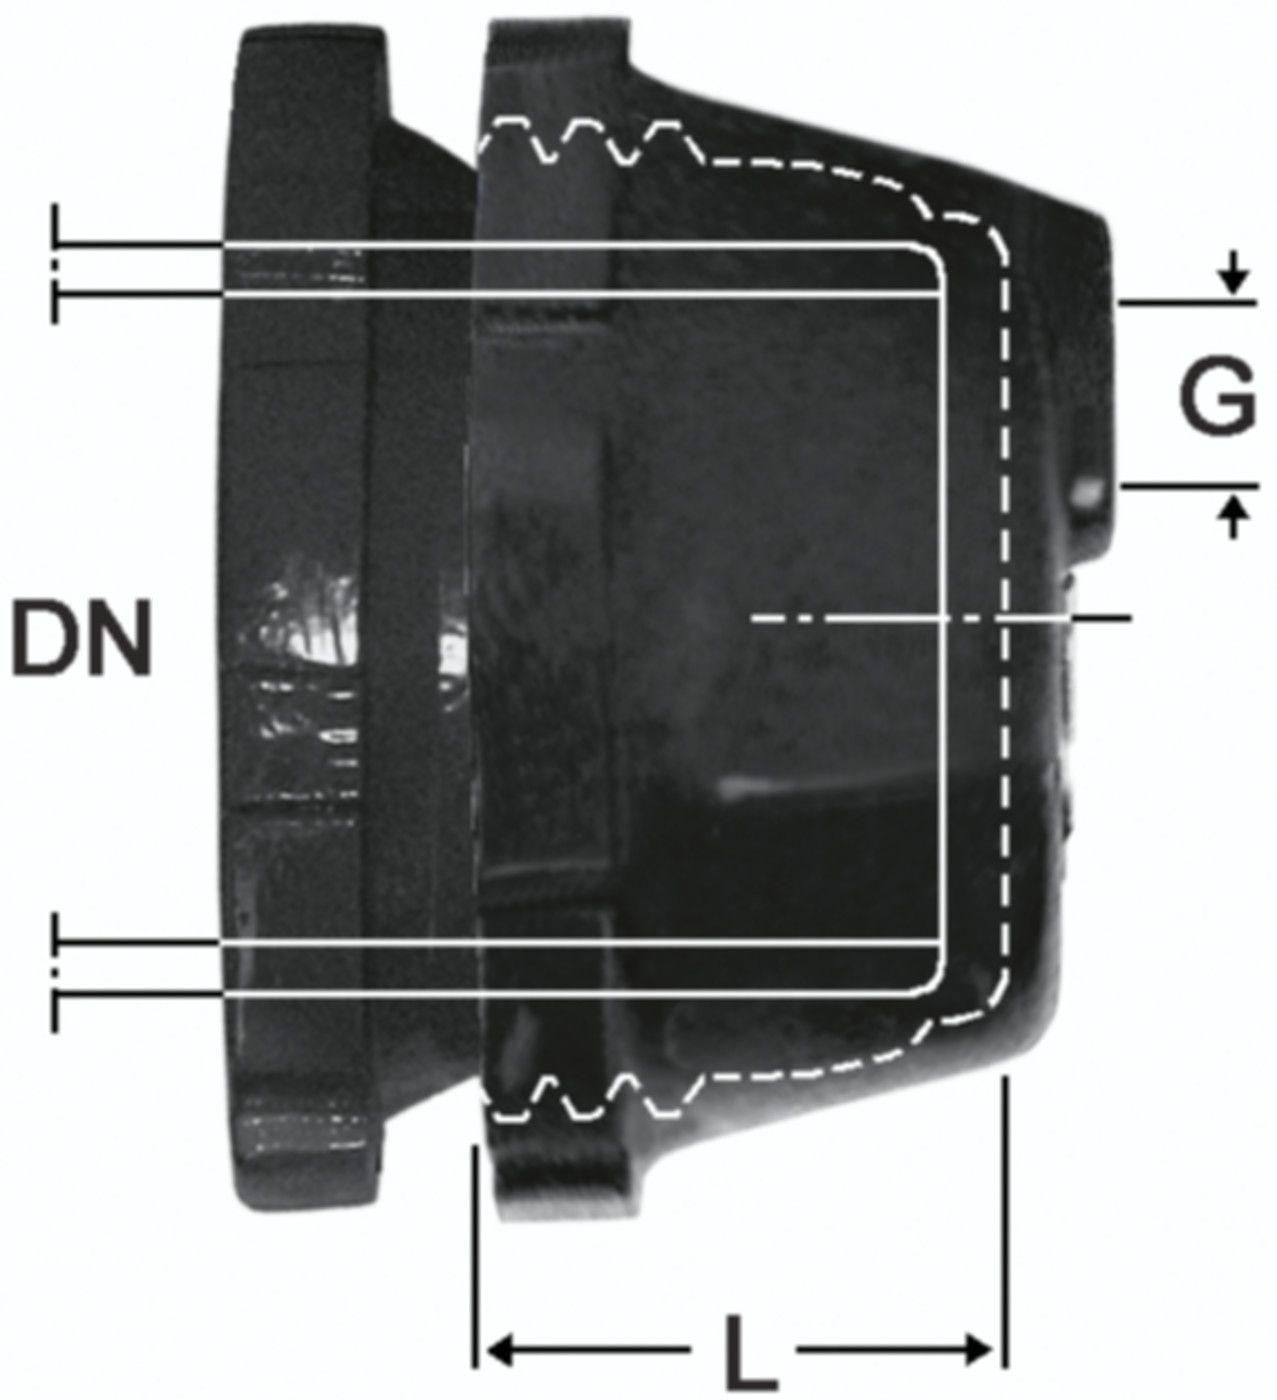 SM-Verschlusskappe Fig. 2395 DN 150 - 1 1/2" - Von Roll Schraubmuffenformstücke